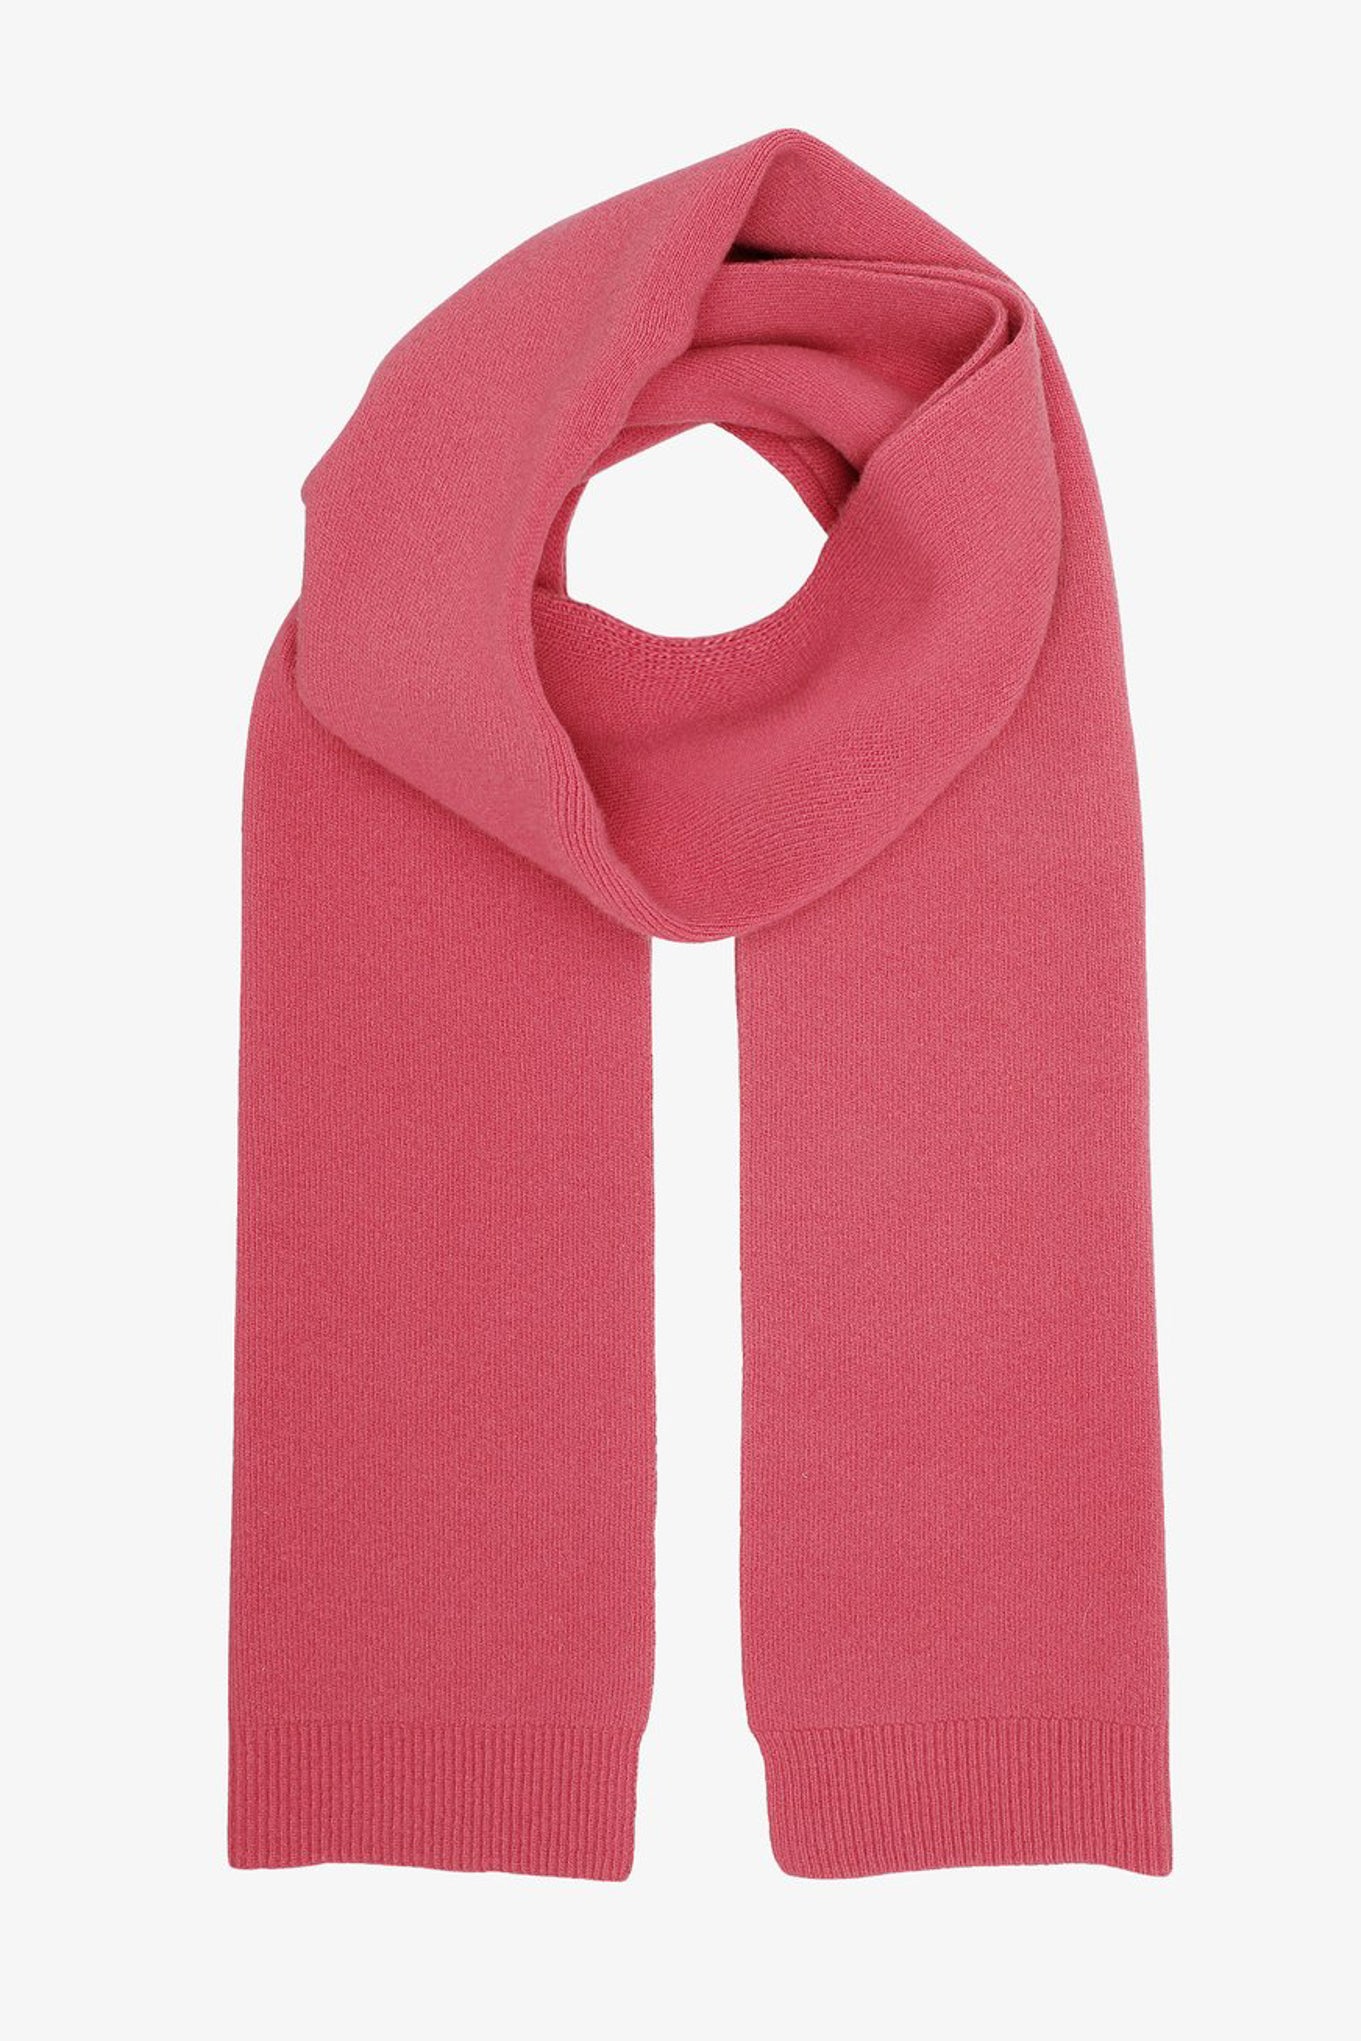 Schal aus recycelter, extrafeiner Merinowolle von Colorful Standard CS 5082 pink himbeer rosa